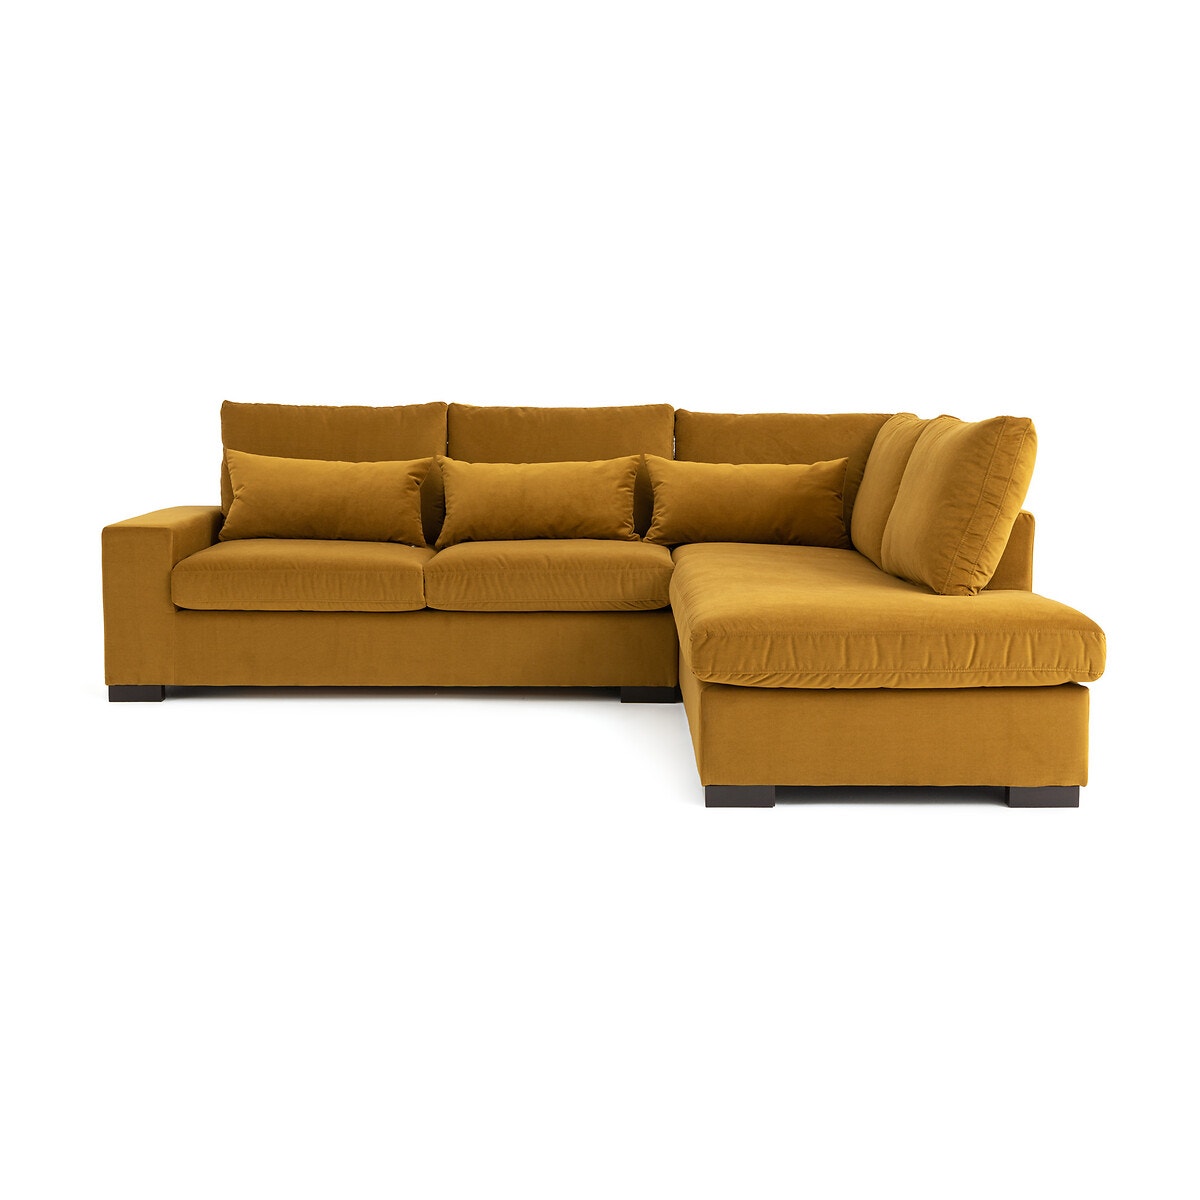 Σπίτι > Έπιπλα > Καθιστικό > Καναπέδες > Γωνιακοί καναπέδες Γωνιακός καναπές-κρεβάτι από βελούδο Μ208xΠ245xΥ80cm